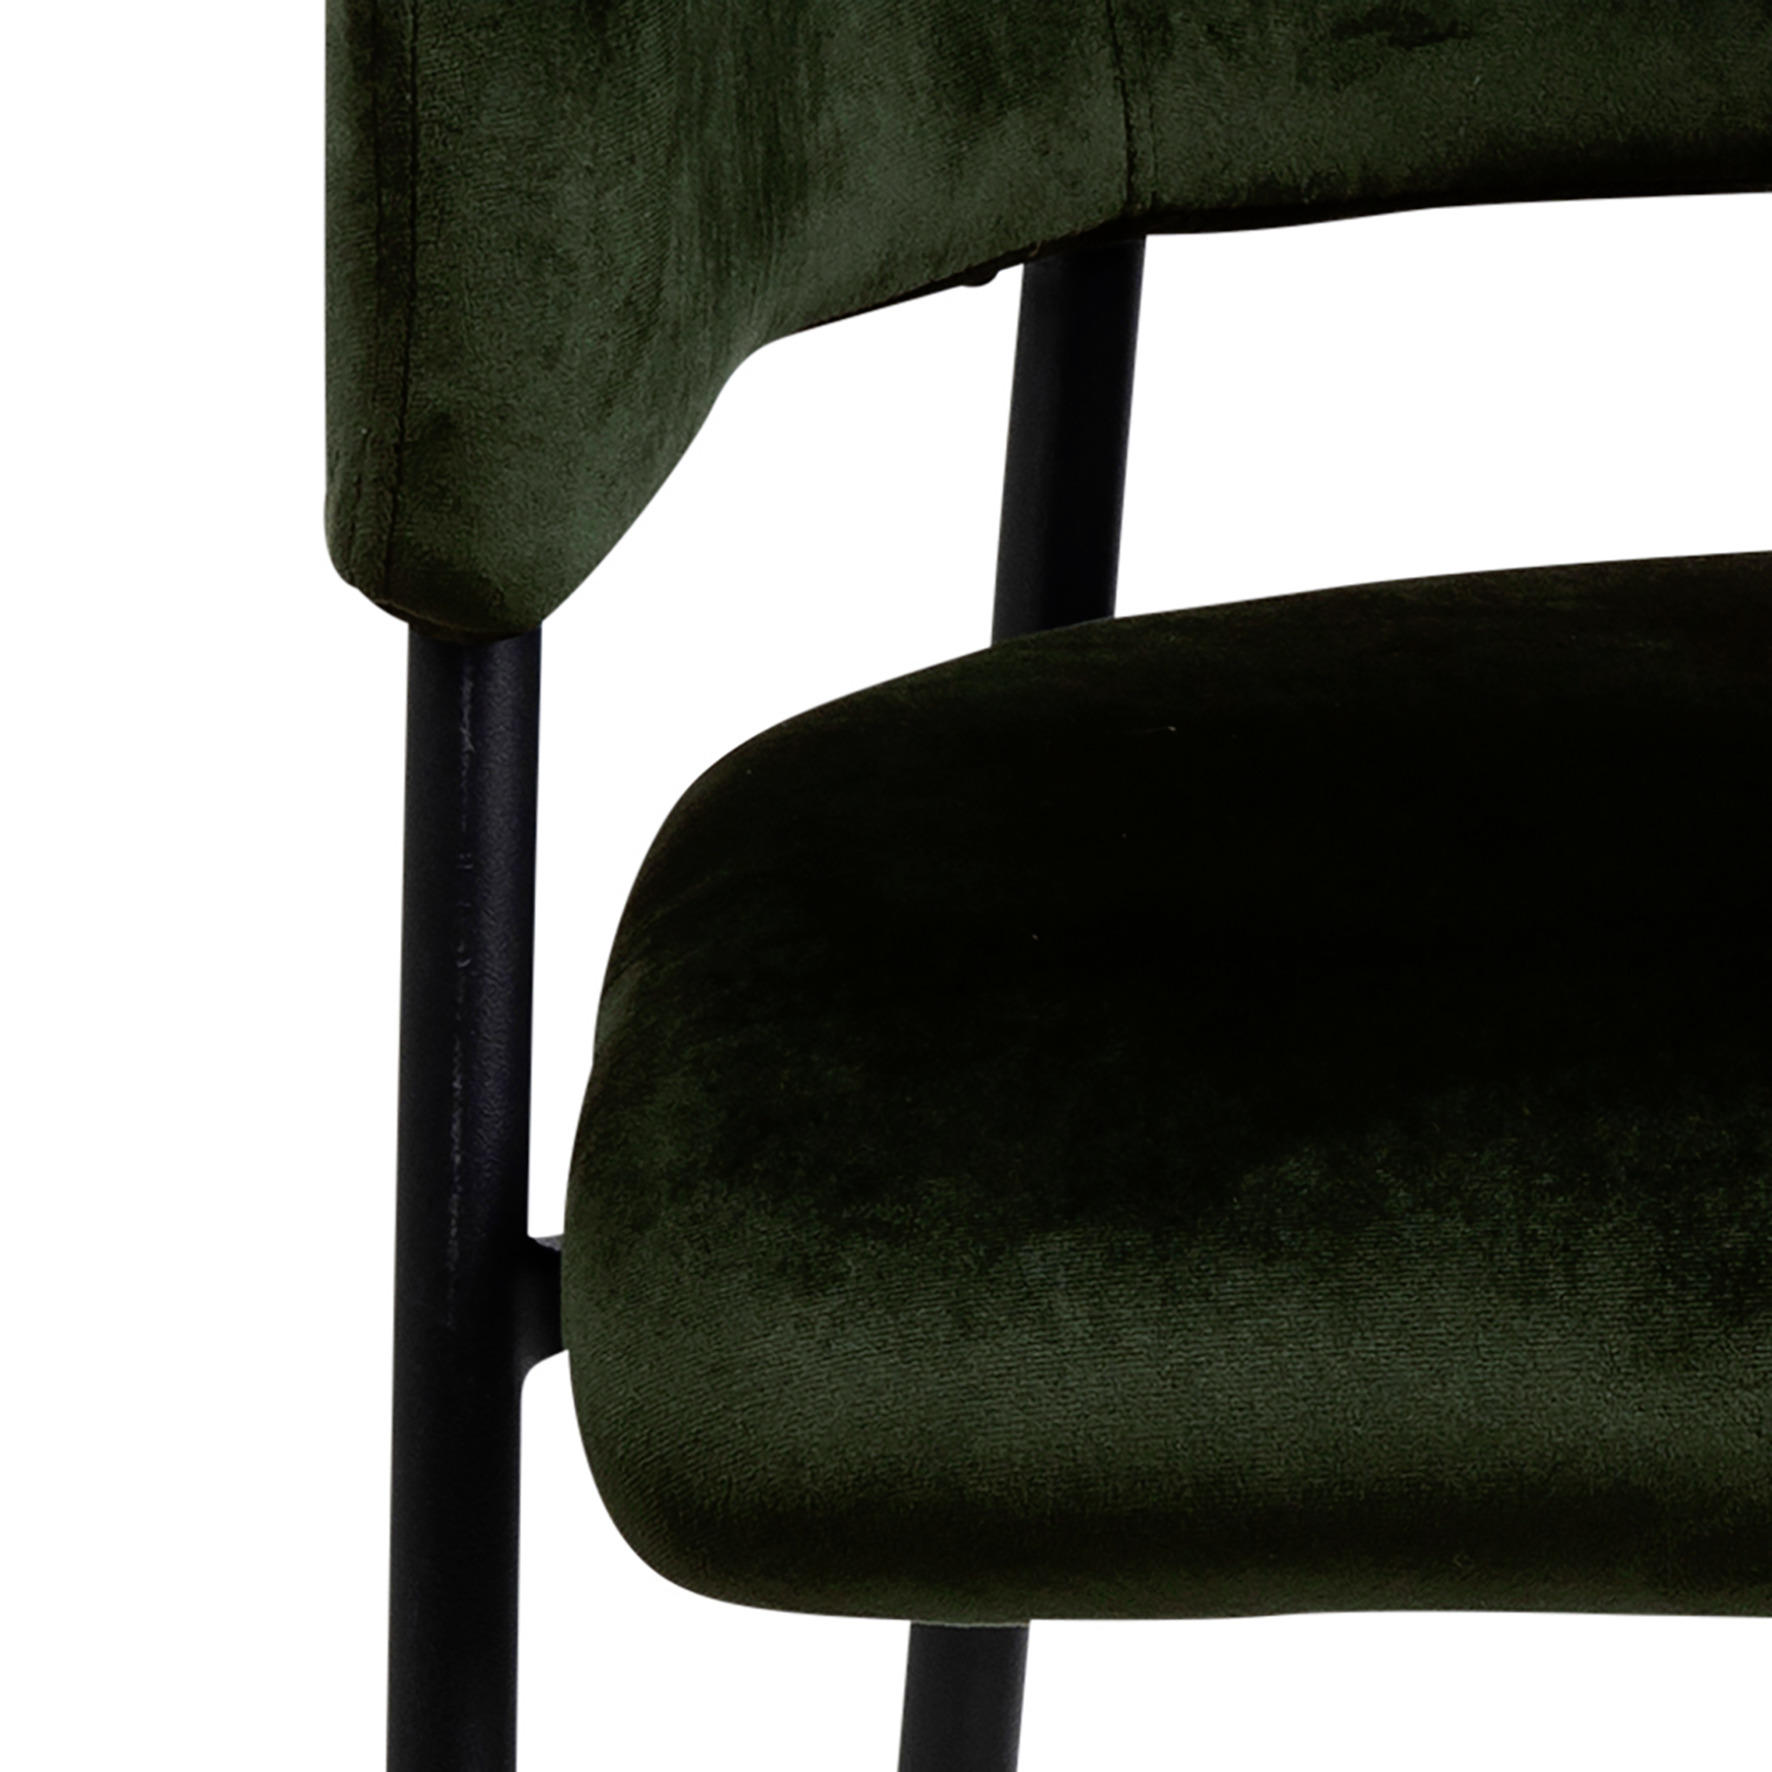 KARMSTOL i metall, textil svart, olivgrön  - olivgrön/svart, Design, metall/textil (54/82/55cm)